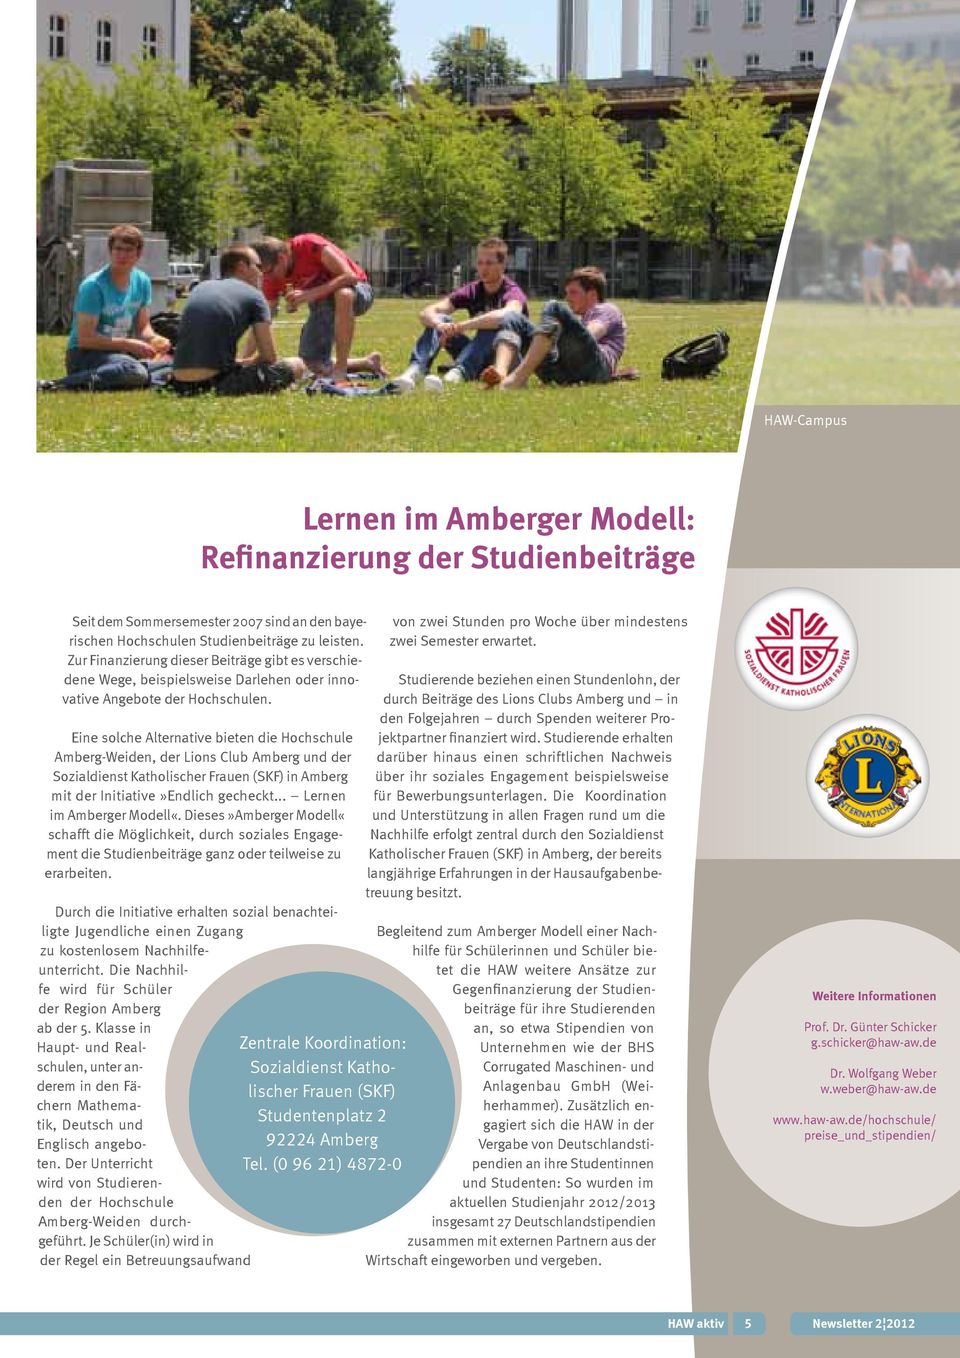 Eine solche Alternative bieten die Hochschule Amberg-Weiden, der Lions Club Amberg und der Sozialdienst Katholischer Frauen (SKF) in Amberg mit der Initiative»Endlich gecheckt.